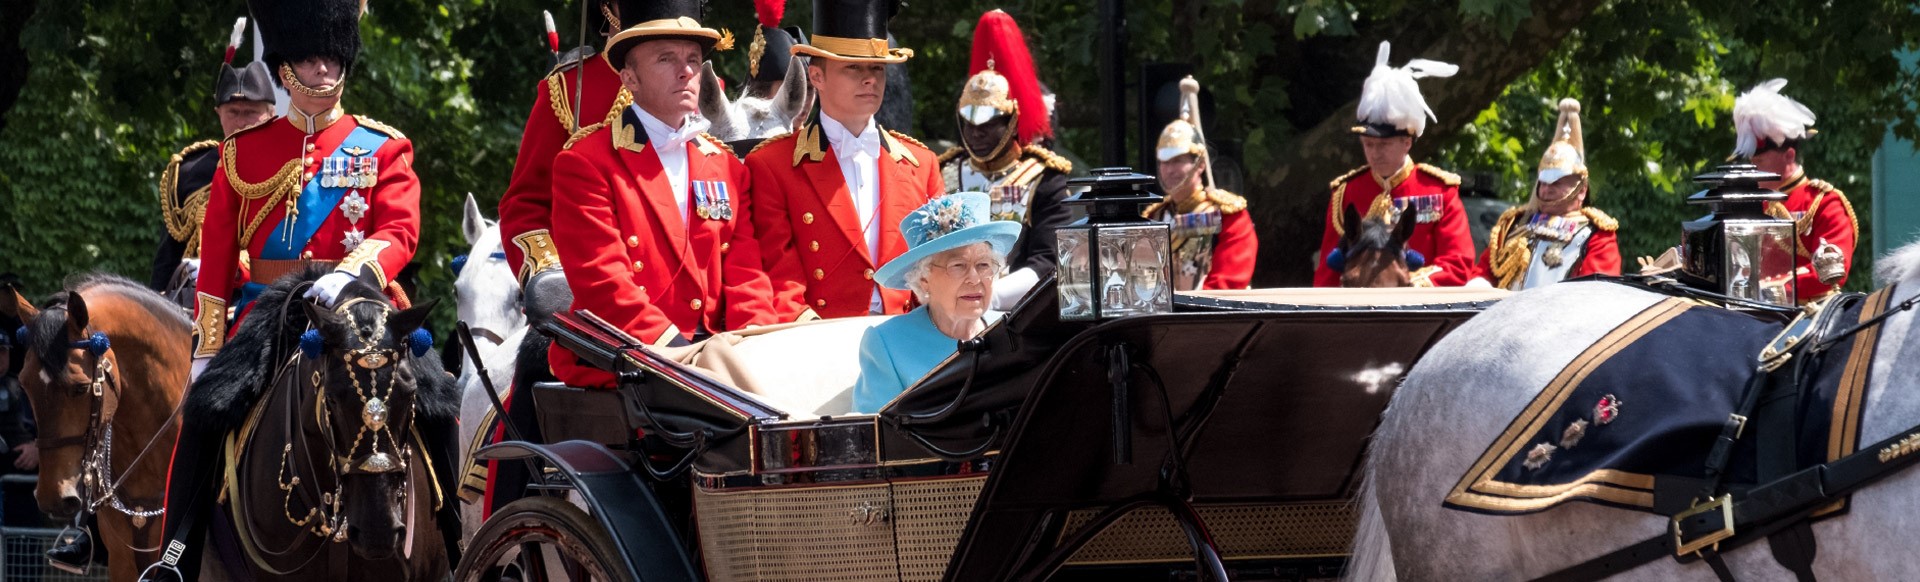 La Reine Elizabeth II voyage le long de l'avenue du Mall dans une calèche ouverte tirée par des chevaux, en provenance du palais de Buckingham